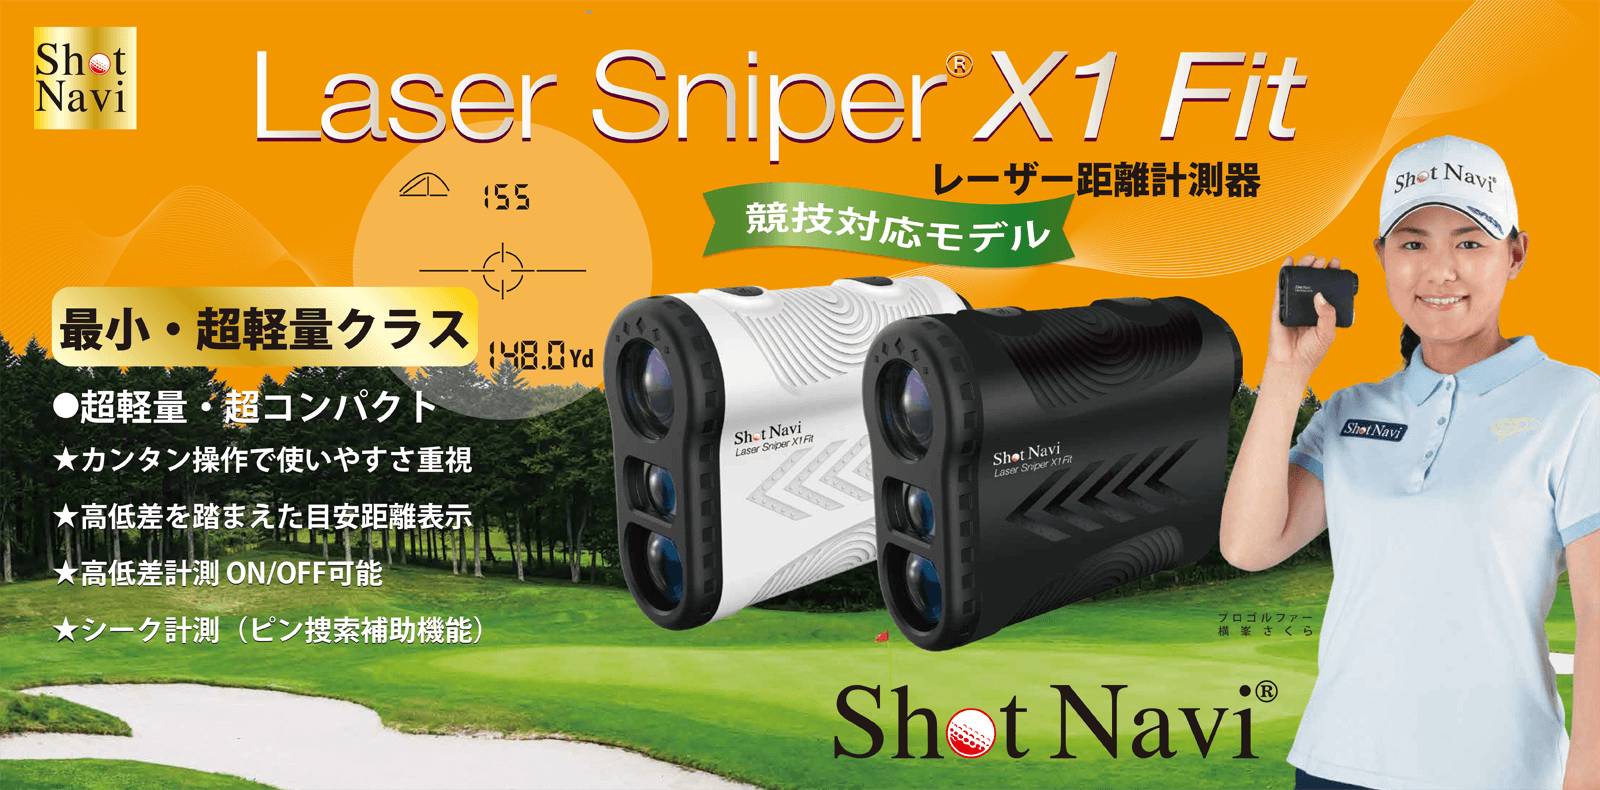 新品 Shot Navi ショットナビ レーザースナイパーX1 SN-LS-X1